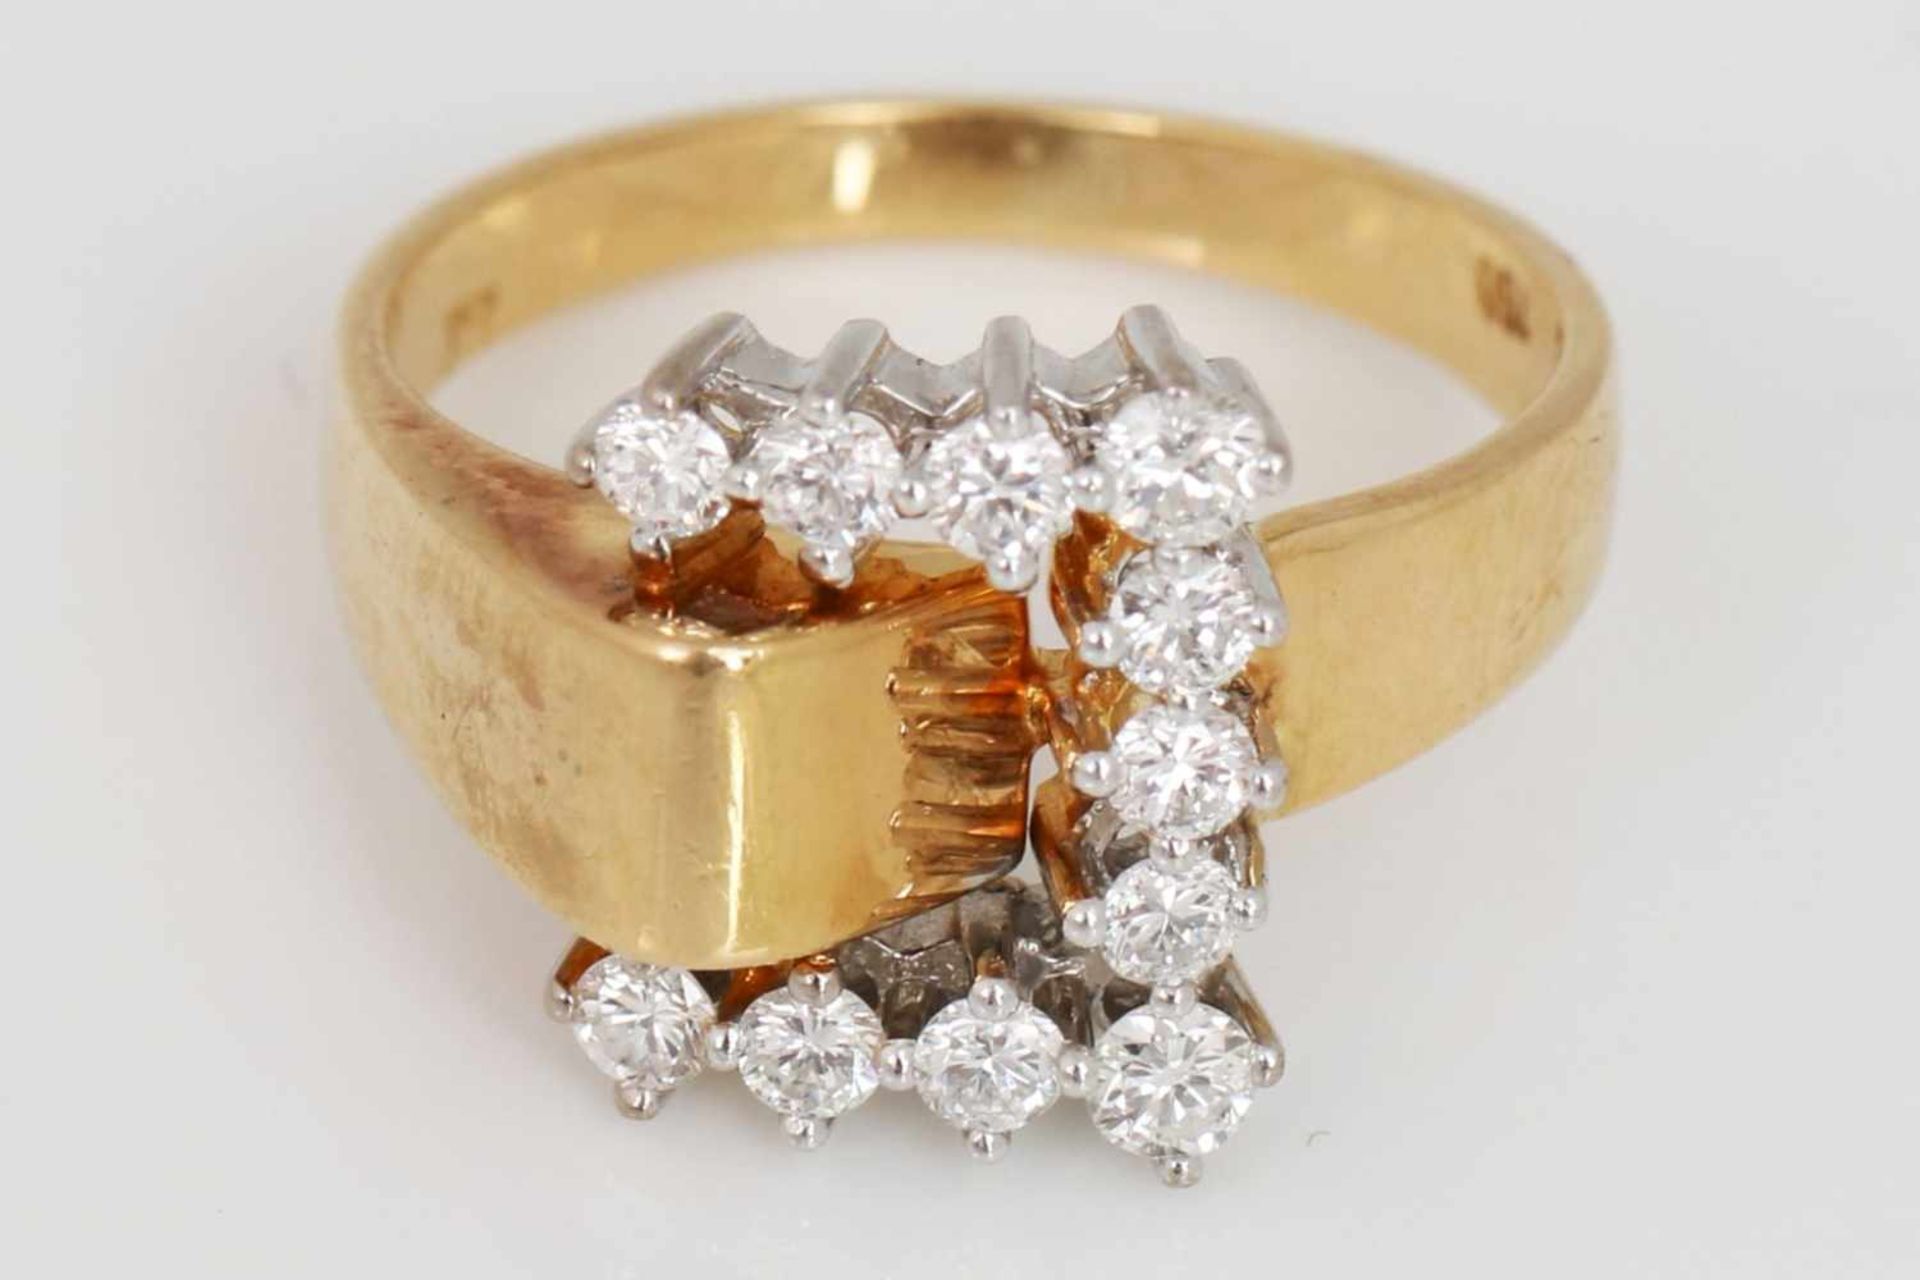 Ring in Form einer Gürtelschnalle750er Gelbgold, mit 11 Brillanten besetzt, hoher Reinheits- und - Image 2 of 2